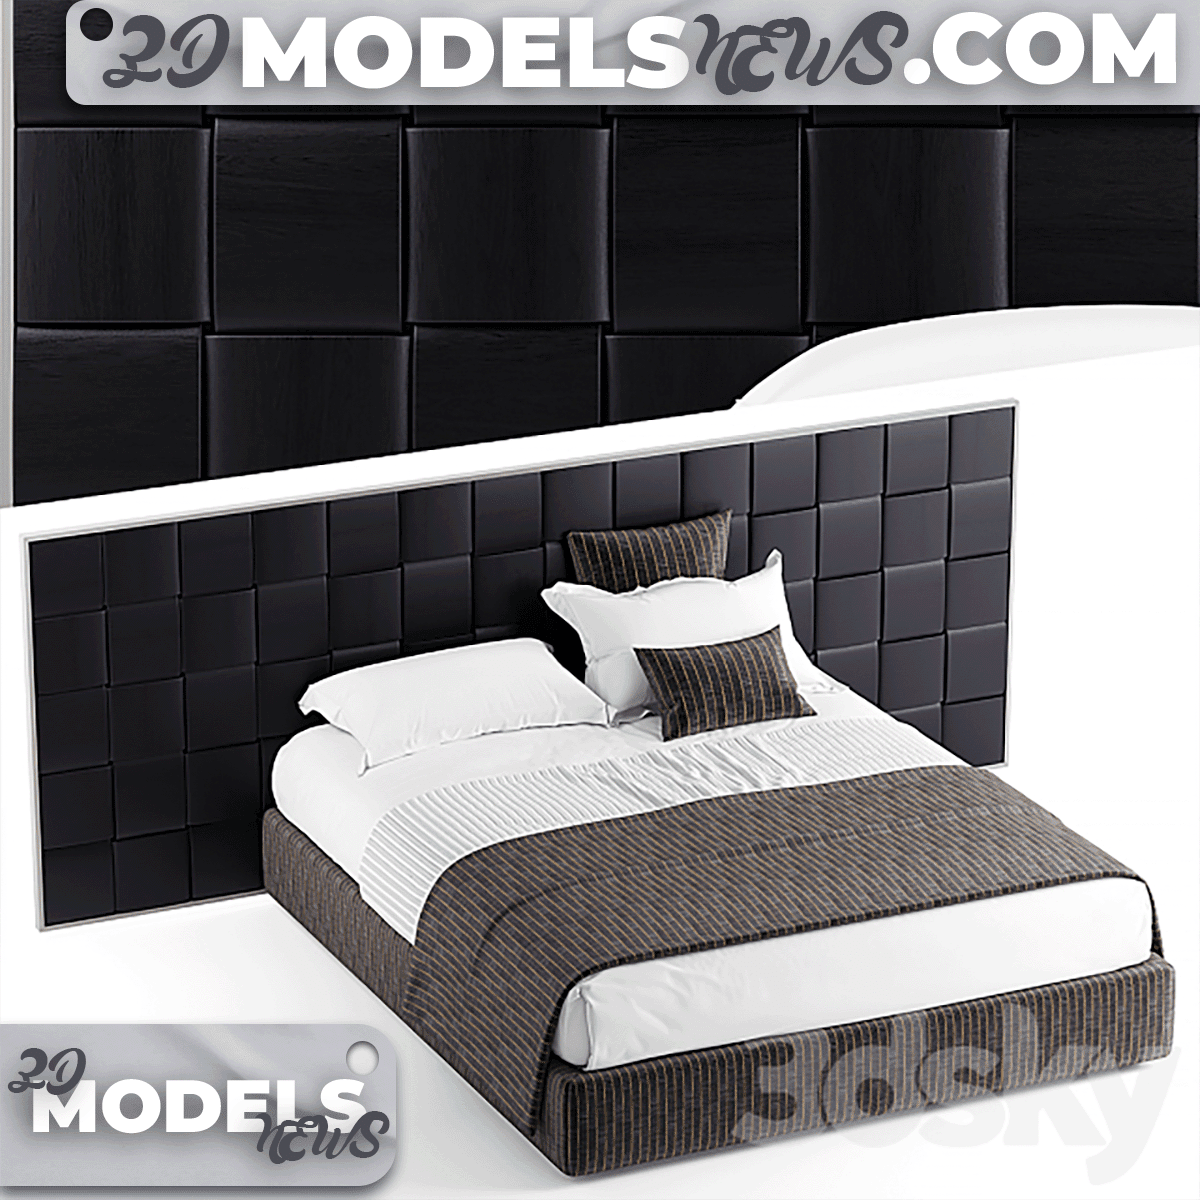 Flou jaipur bed model 4